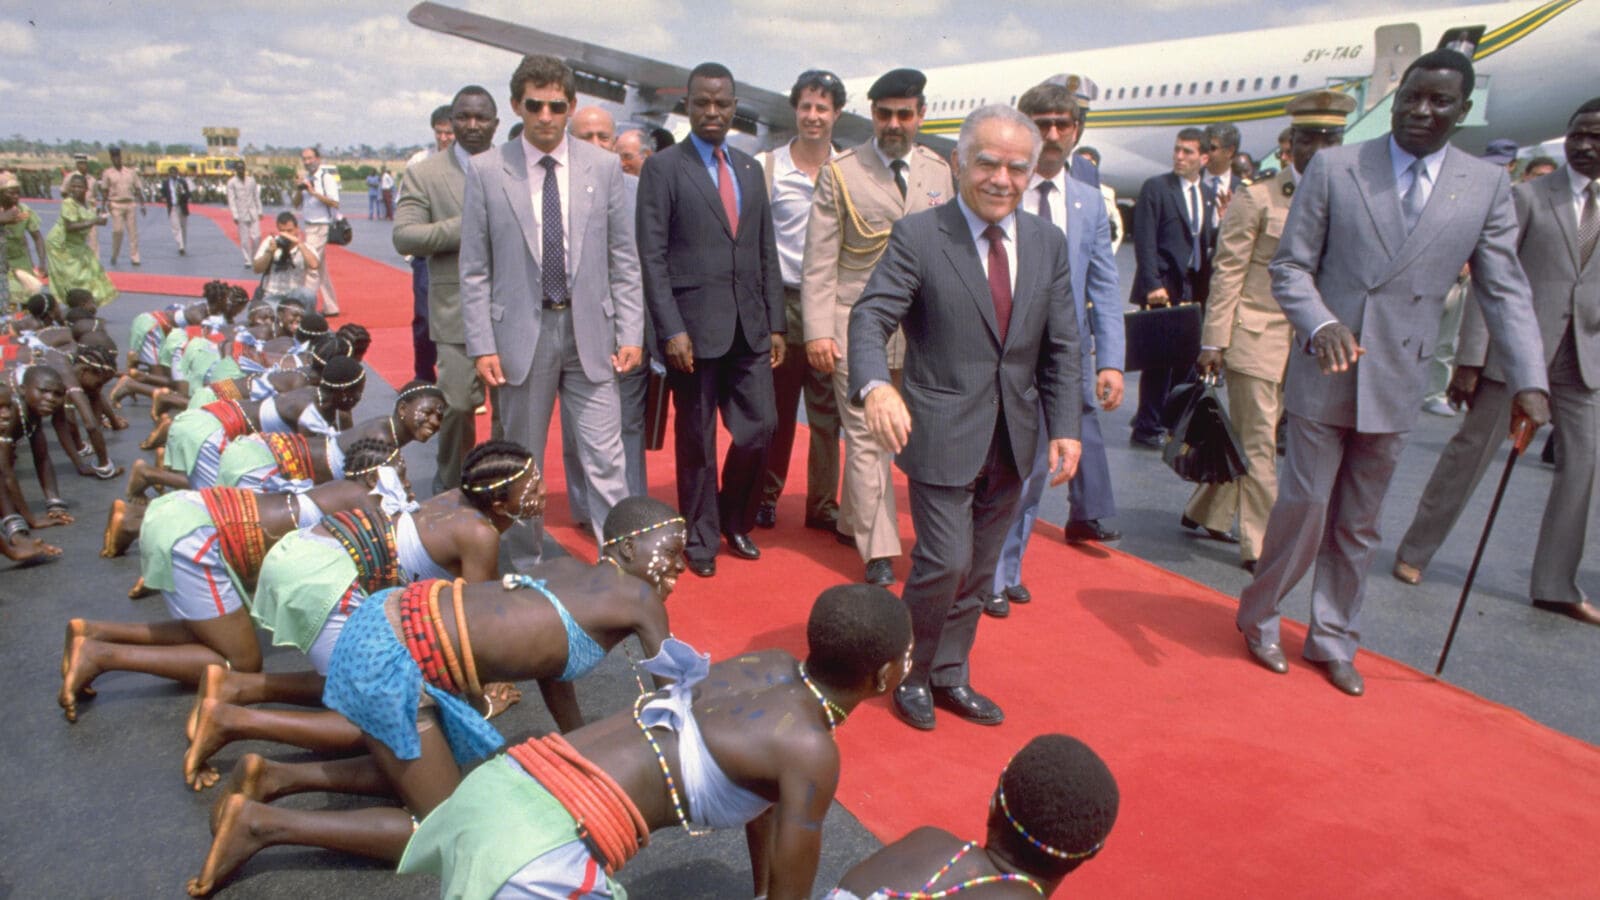 טקס קבלת פנים לרה"מ יצחק שמיר בנמל התעופה בלומה, בירת טוגו, 14.6.1987 (צילום: נתי הרניק, לע"מ)